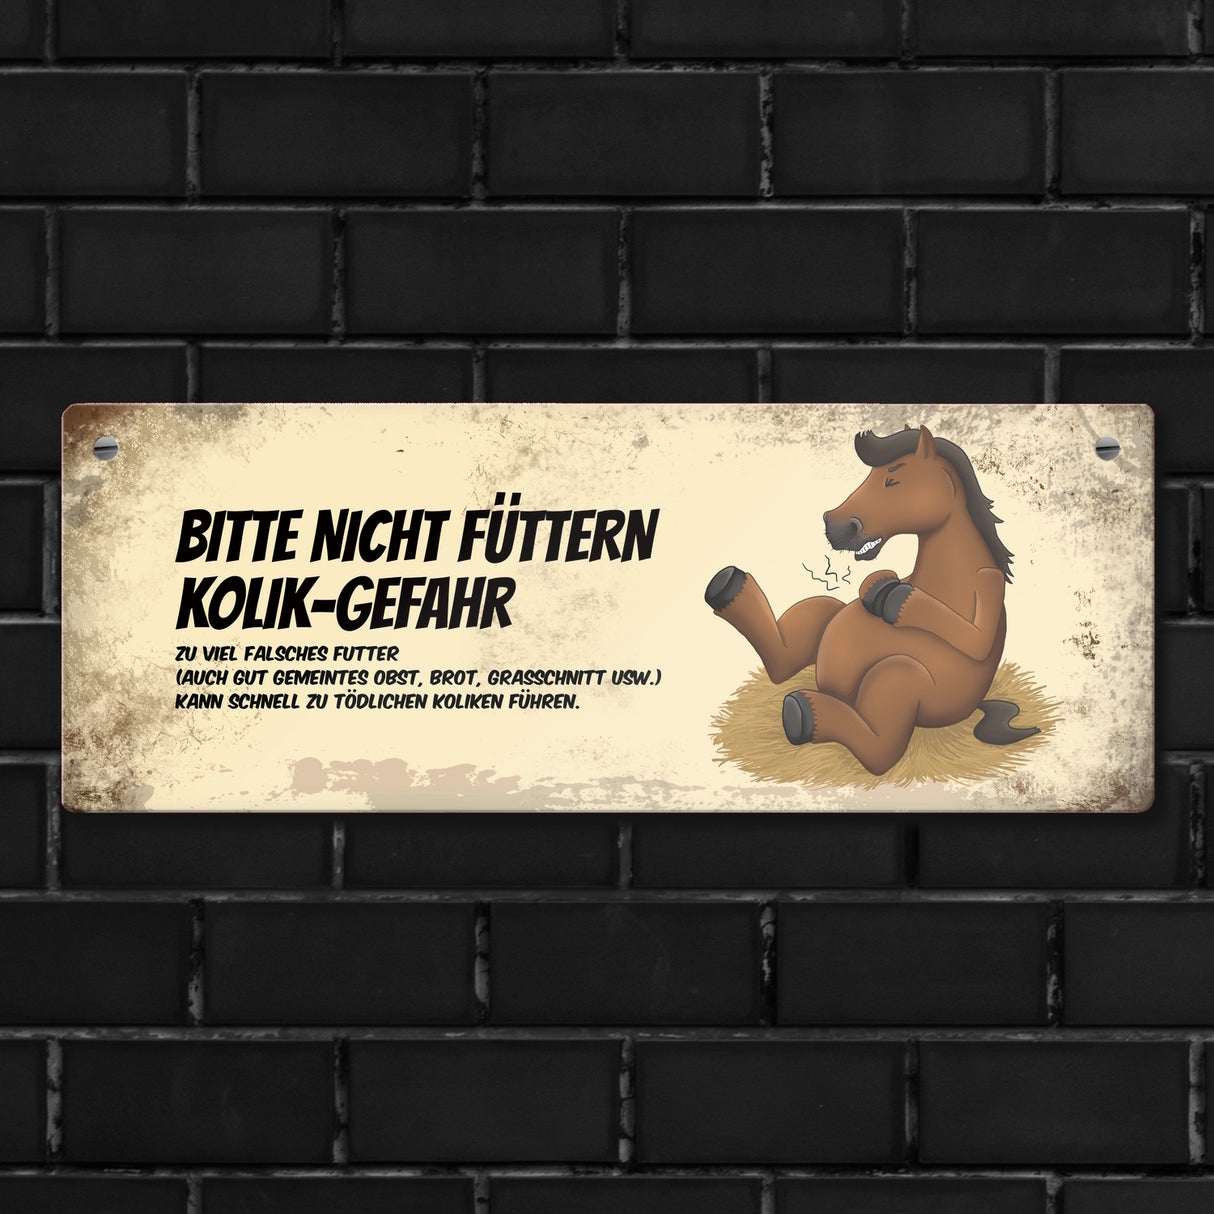 Metallschild mit braunem Pferd Motiv und Spruch: Bitte nicht füttern - Kolik-Gefahr